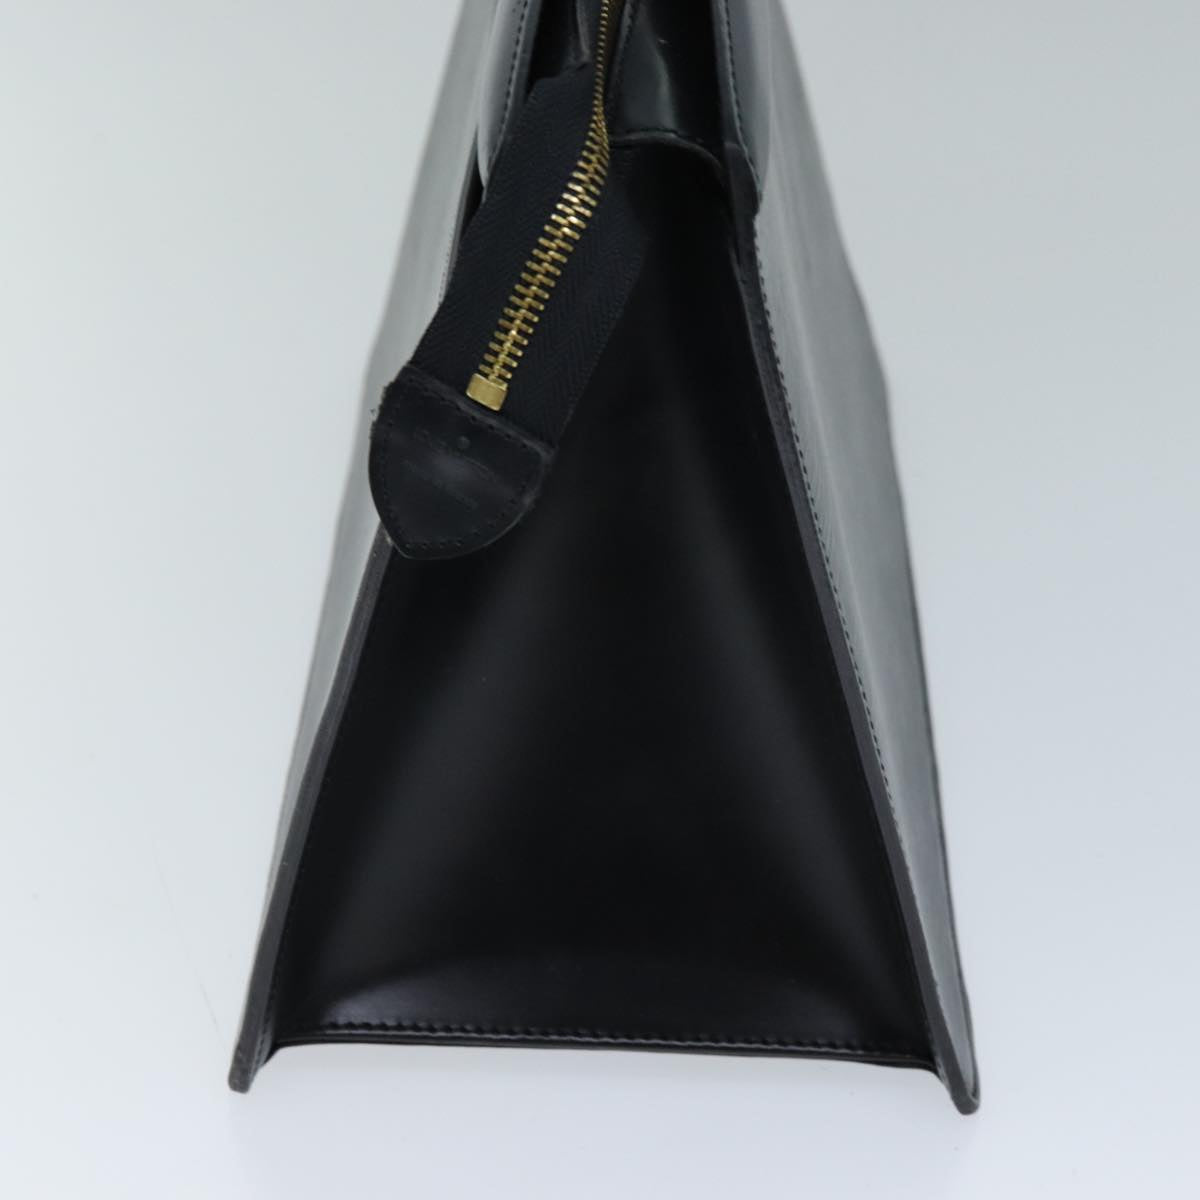 LOUIS VUITTON Epi Riviera Hand Bag Noir Black M48182 LV Auth ep4126